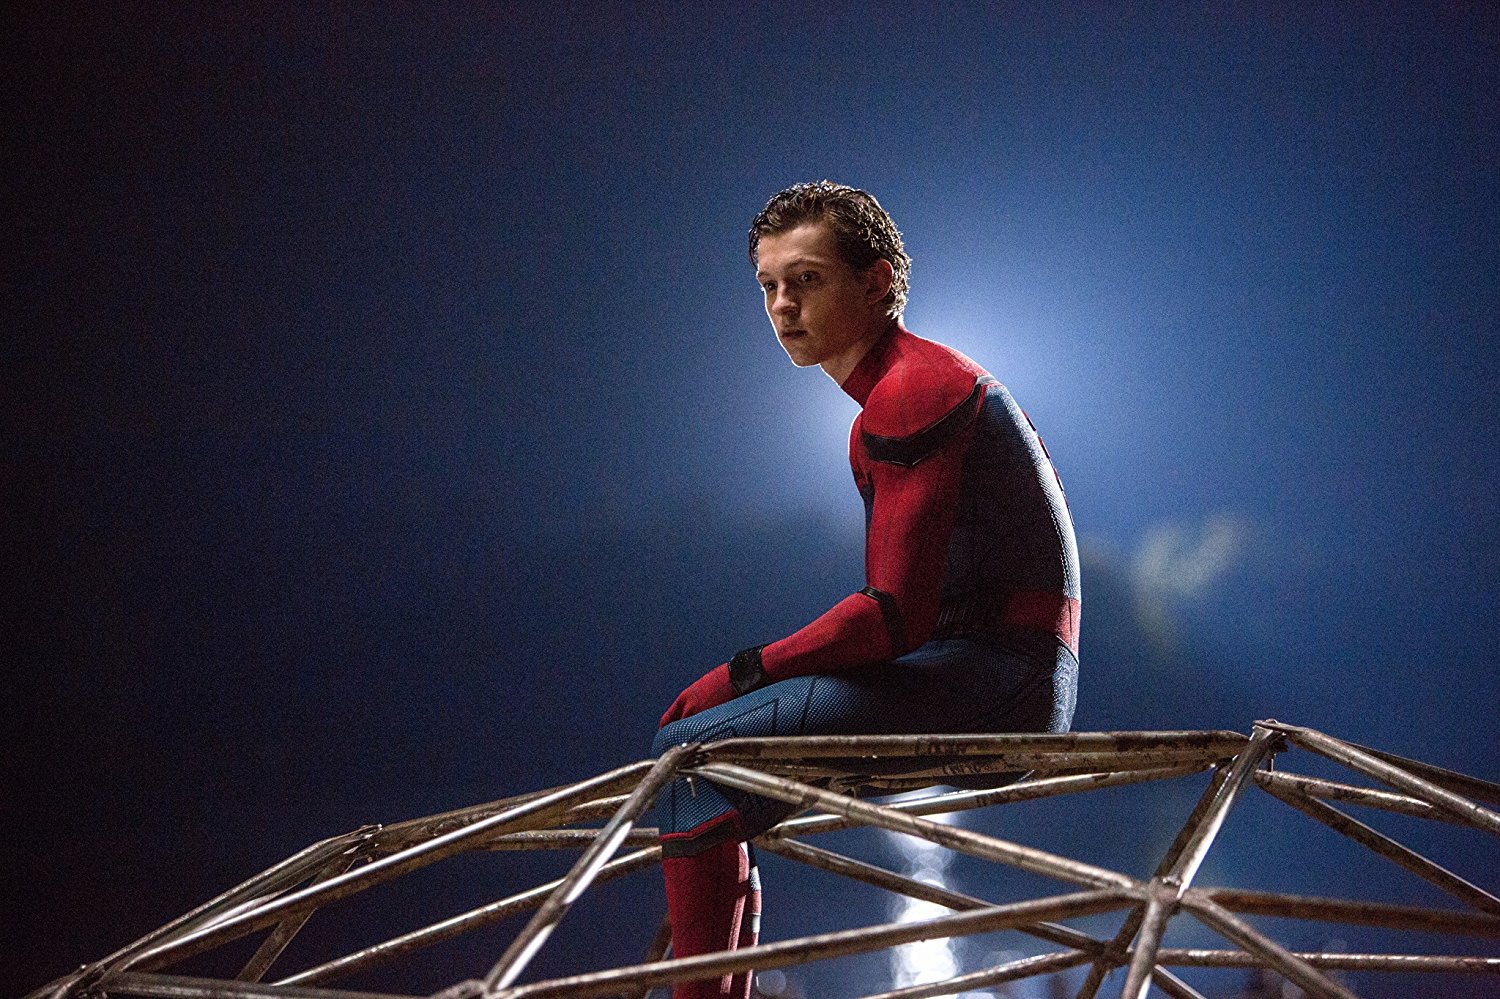 ¿Nada más? Esto fue lo que le pagaron a Robert Downey Jr. por aparecer en Spider-Man: Homecoming